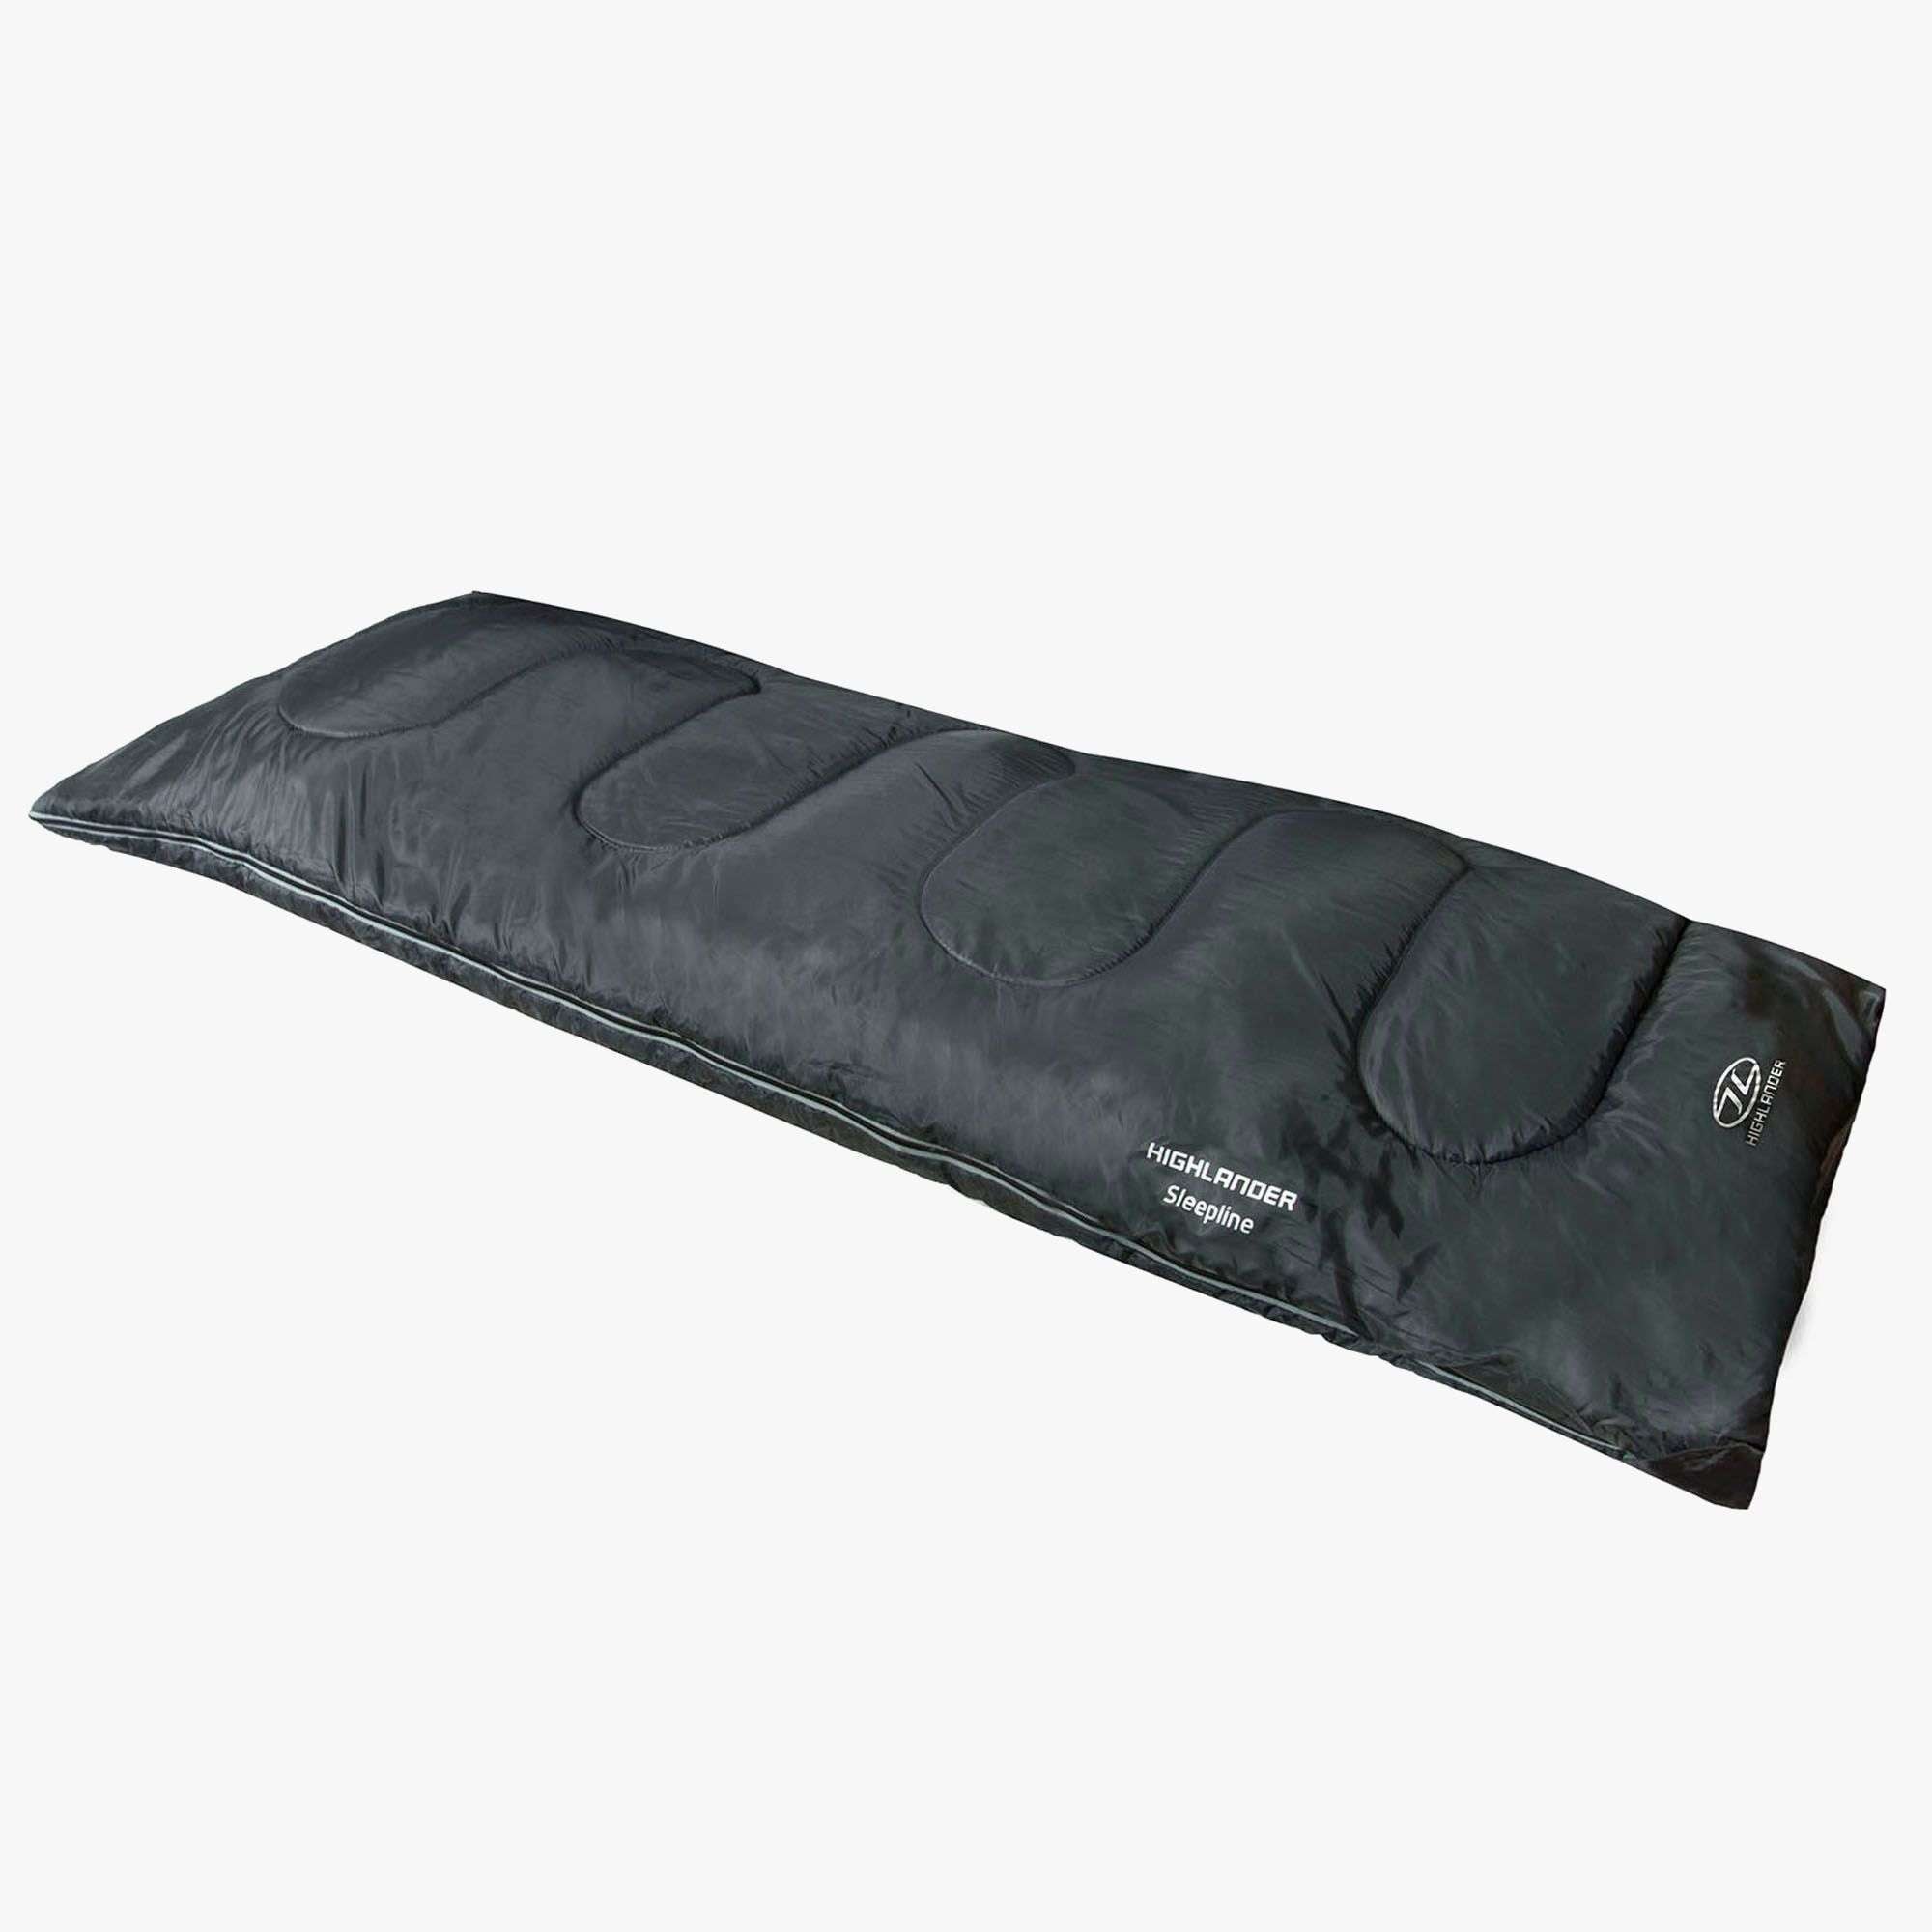 Highlander, Highlander Sleepline 250 Envelope Sleeping Bag, Sleeping Bags,Wylies Outdoor World,